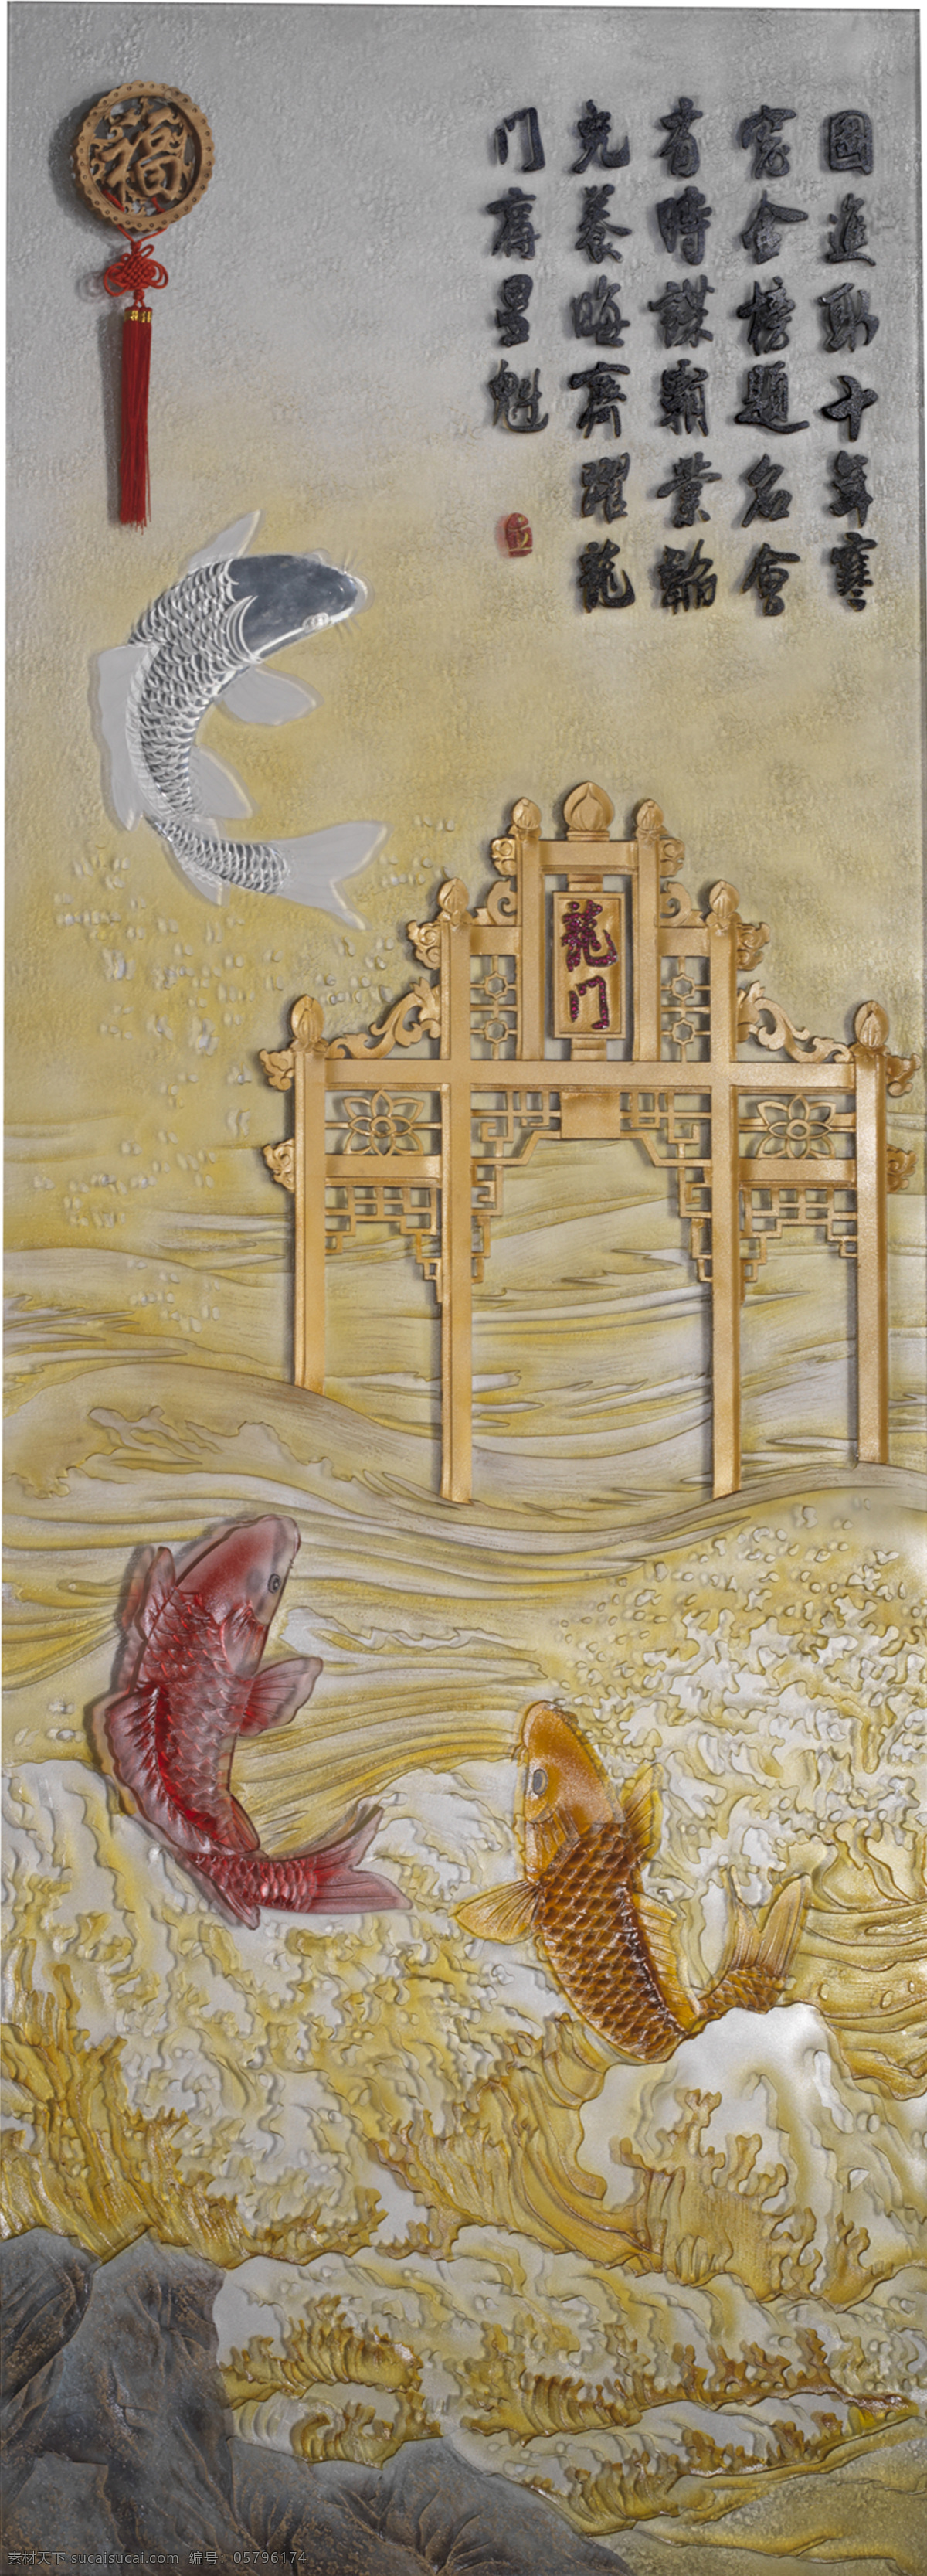 鱼跃龙门 望子成龙 鱼 鱼跳龙门 工艺品 艺术玻璃 绘画书法 文化艺术